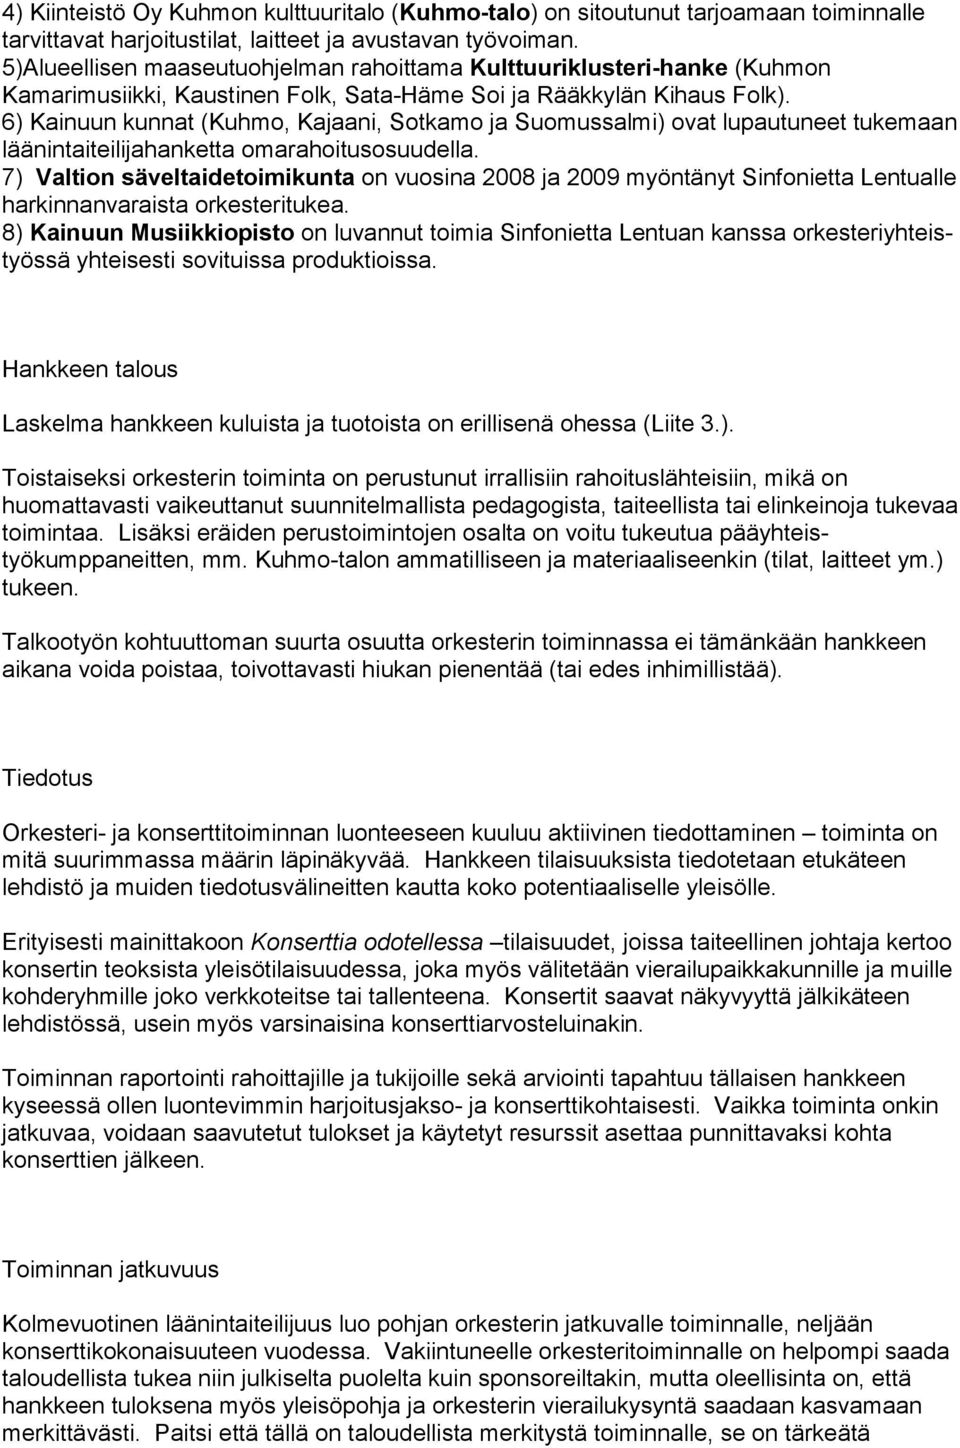 6) Kainuun kunnat (Kuhmo, Kajaani, Sotkamo ja Suomussalmi) ovat lupautuneet tukemaan läänintaiteilijahanketta omarahoitusosuudella.